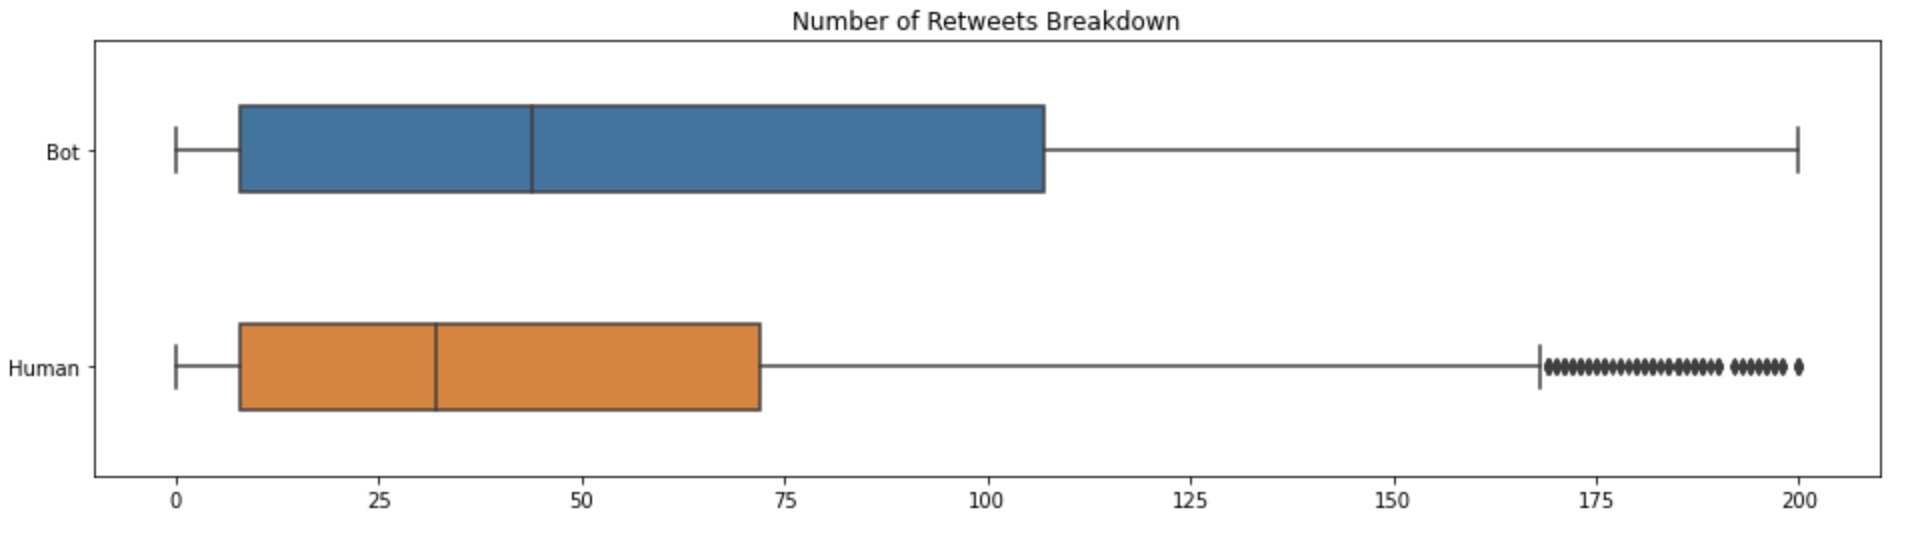 Number of Retweets Breakdown